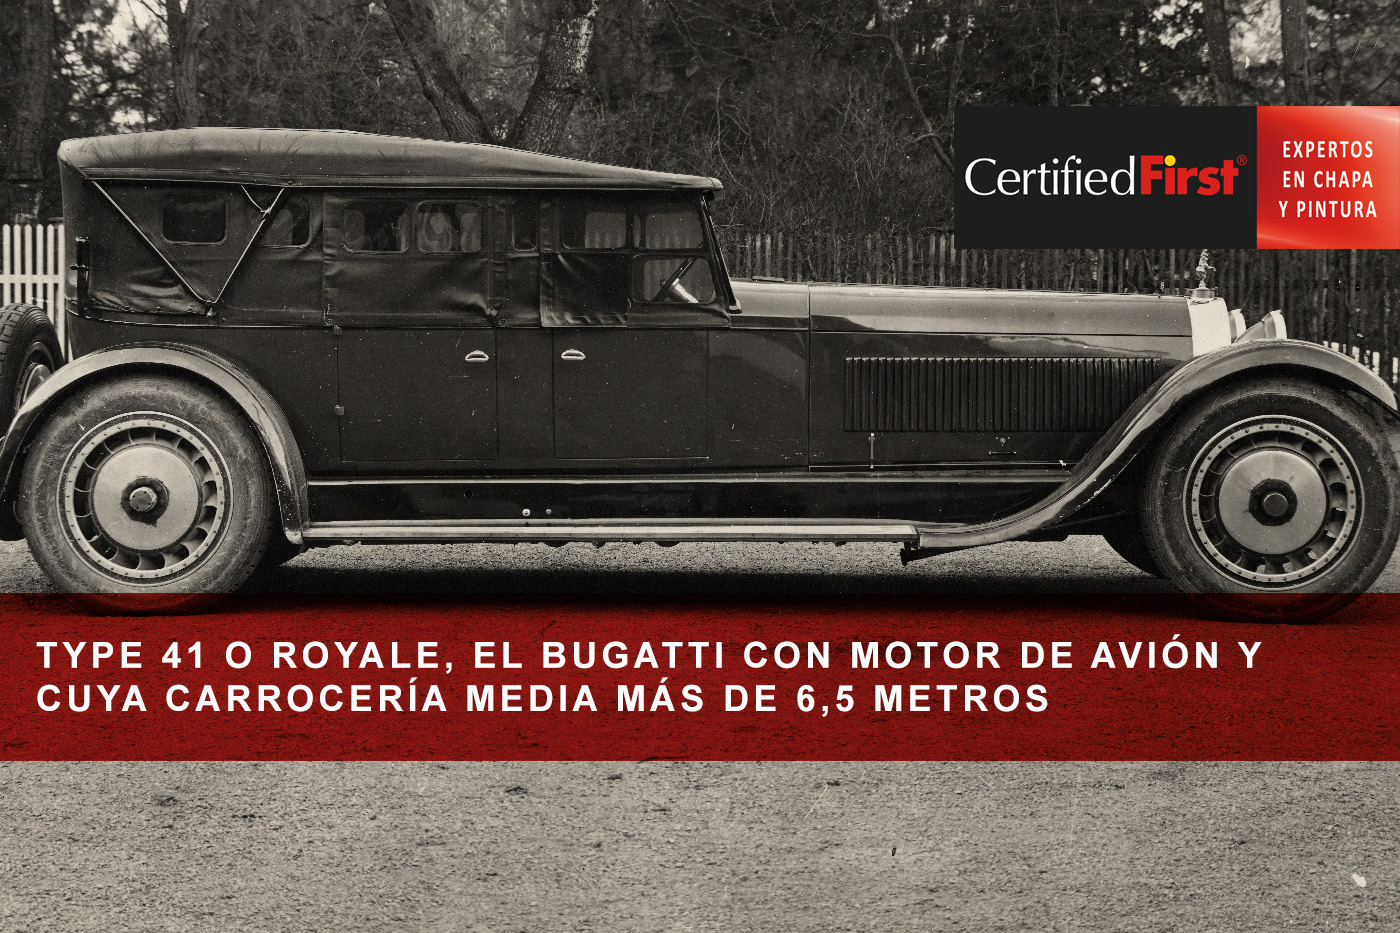 TYPE 41 o ROYALE, el Bugatti con motor de avión y cuya carrocería media más de 6,5 metros 